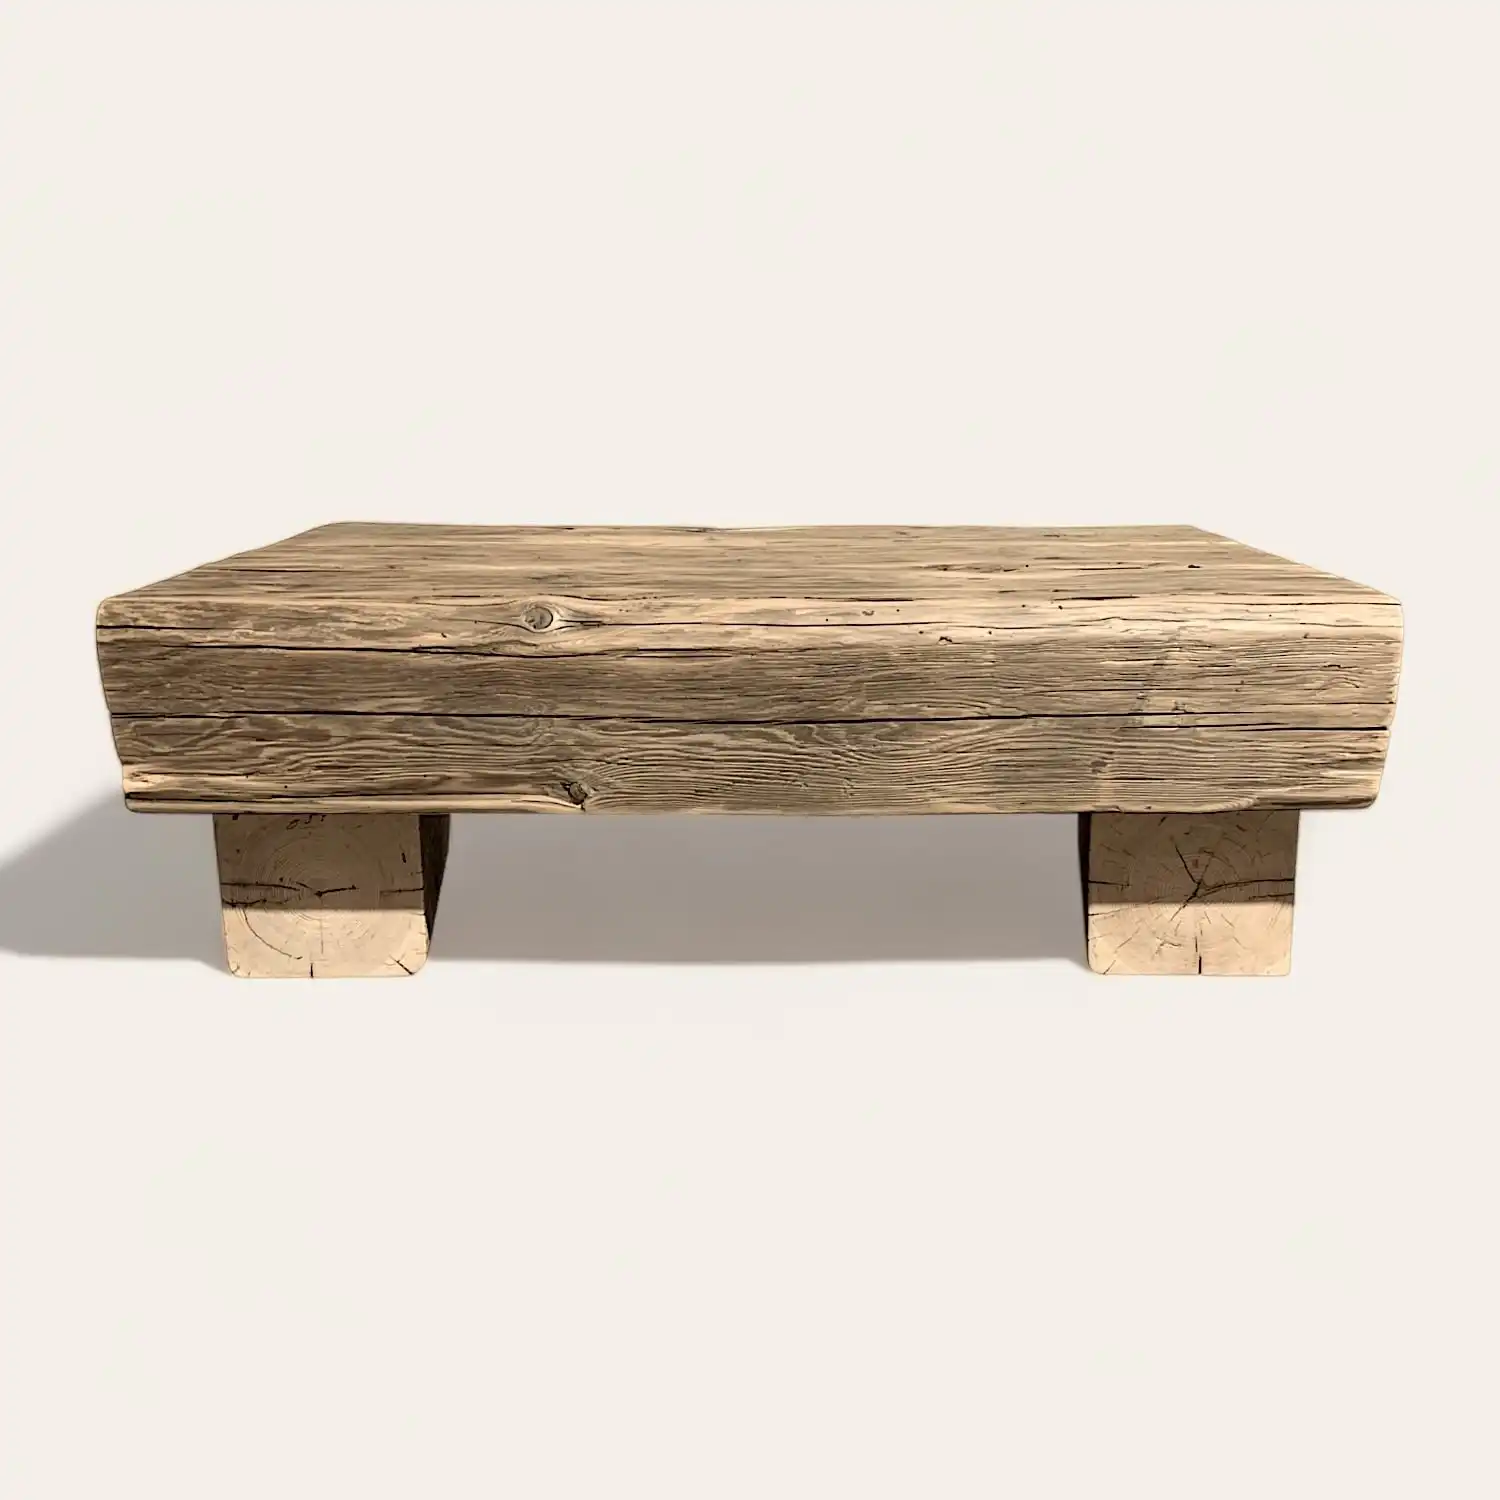  Un banc en bois rustique avec pieds. 